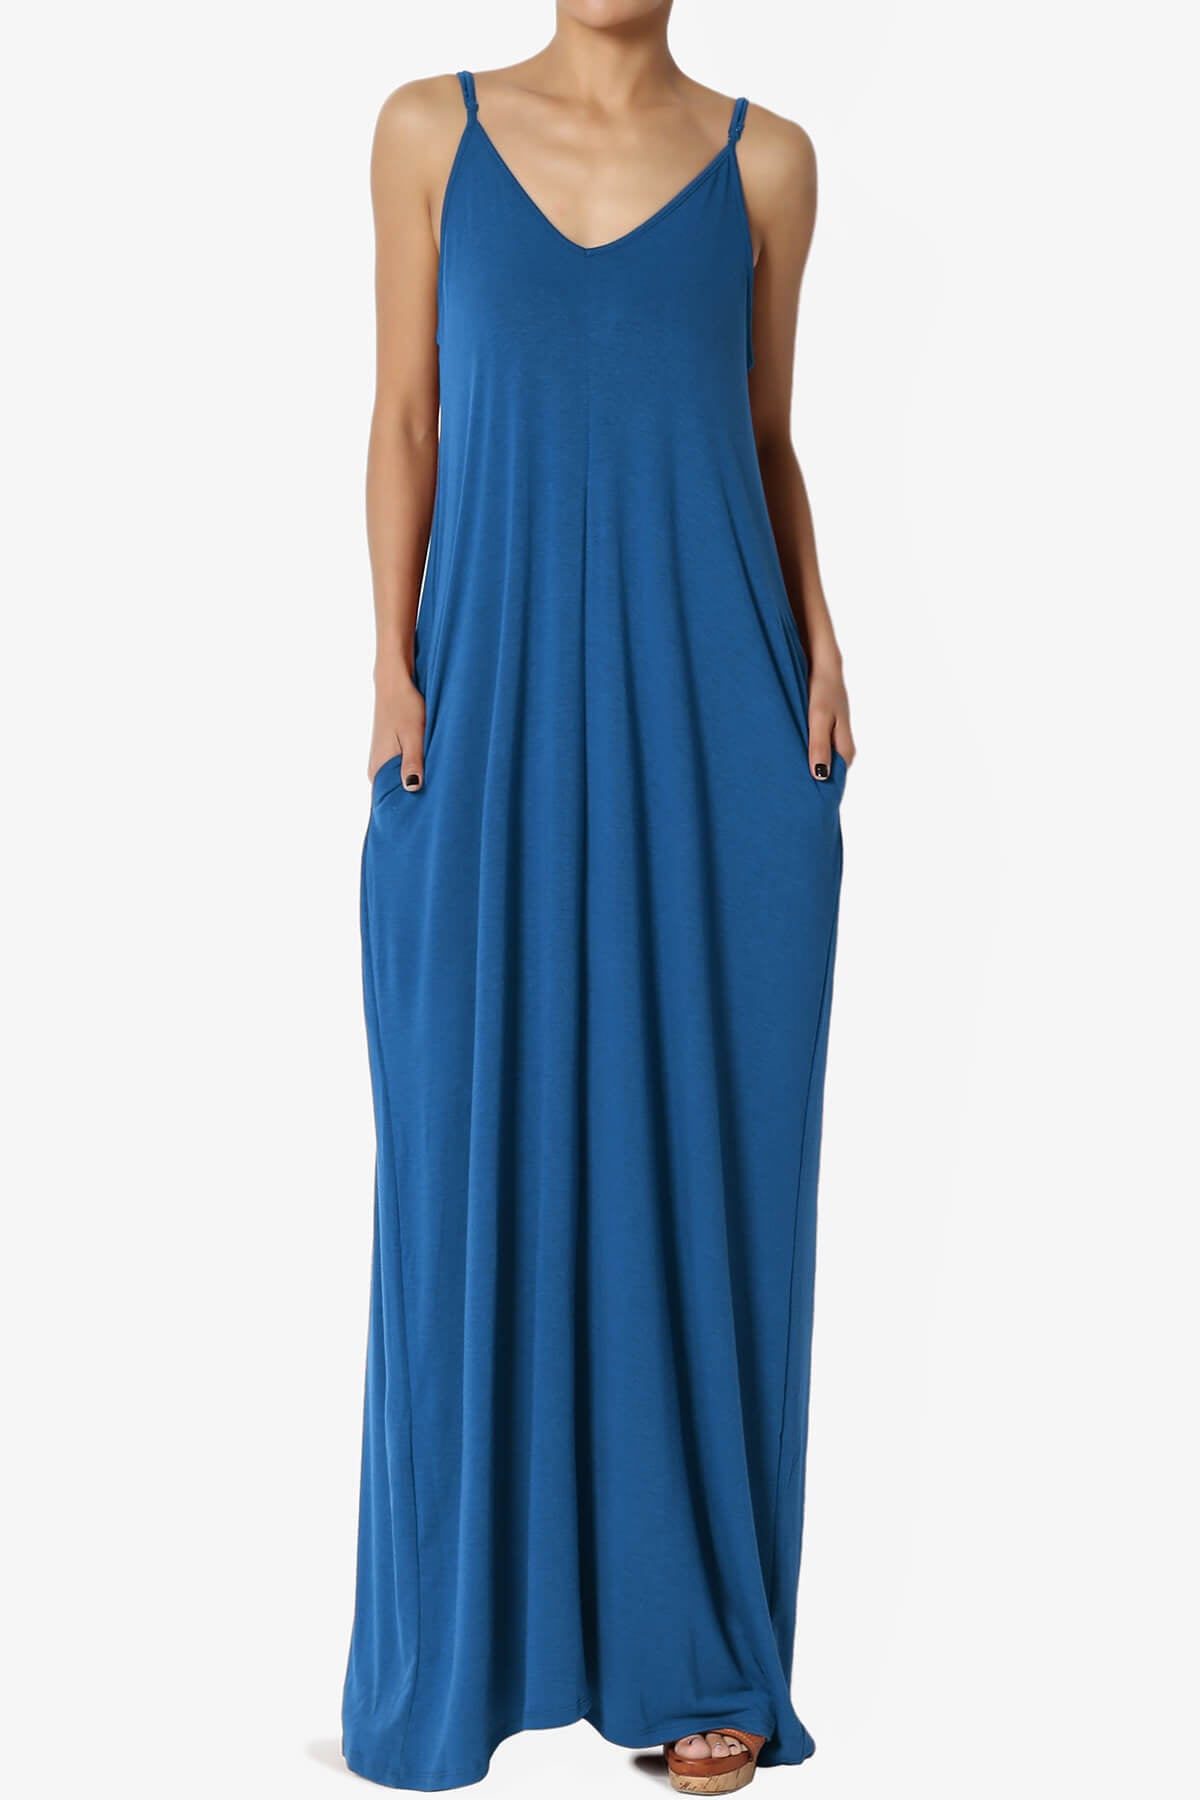 Venus Pocket Cami Maxi Dress CLASSIC BLUE_3